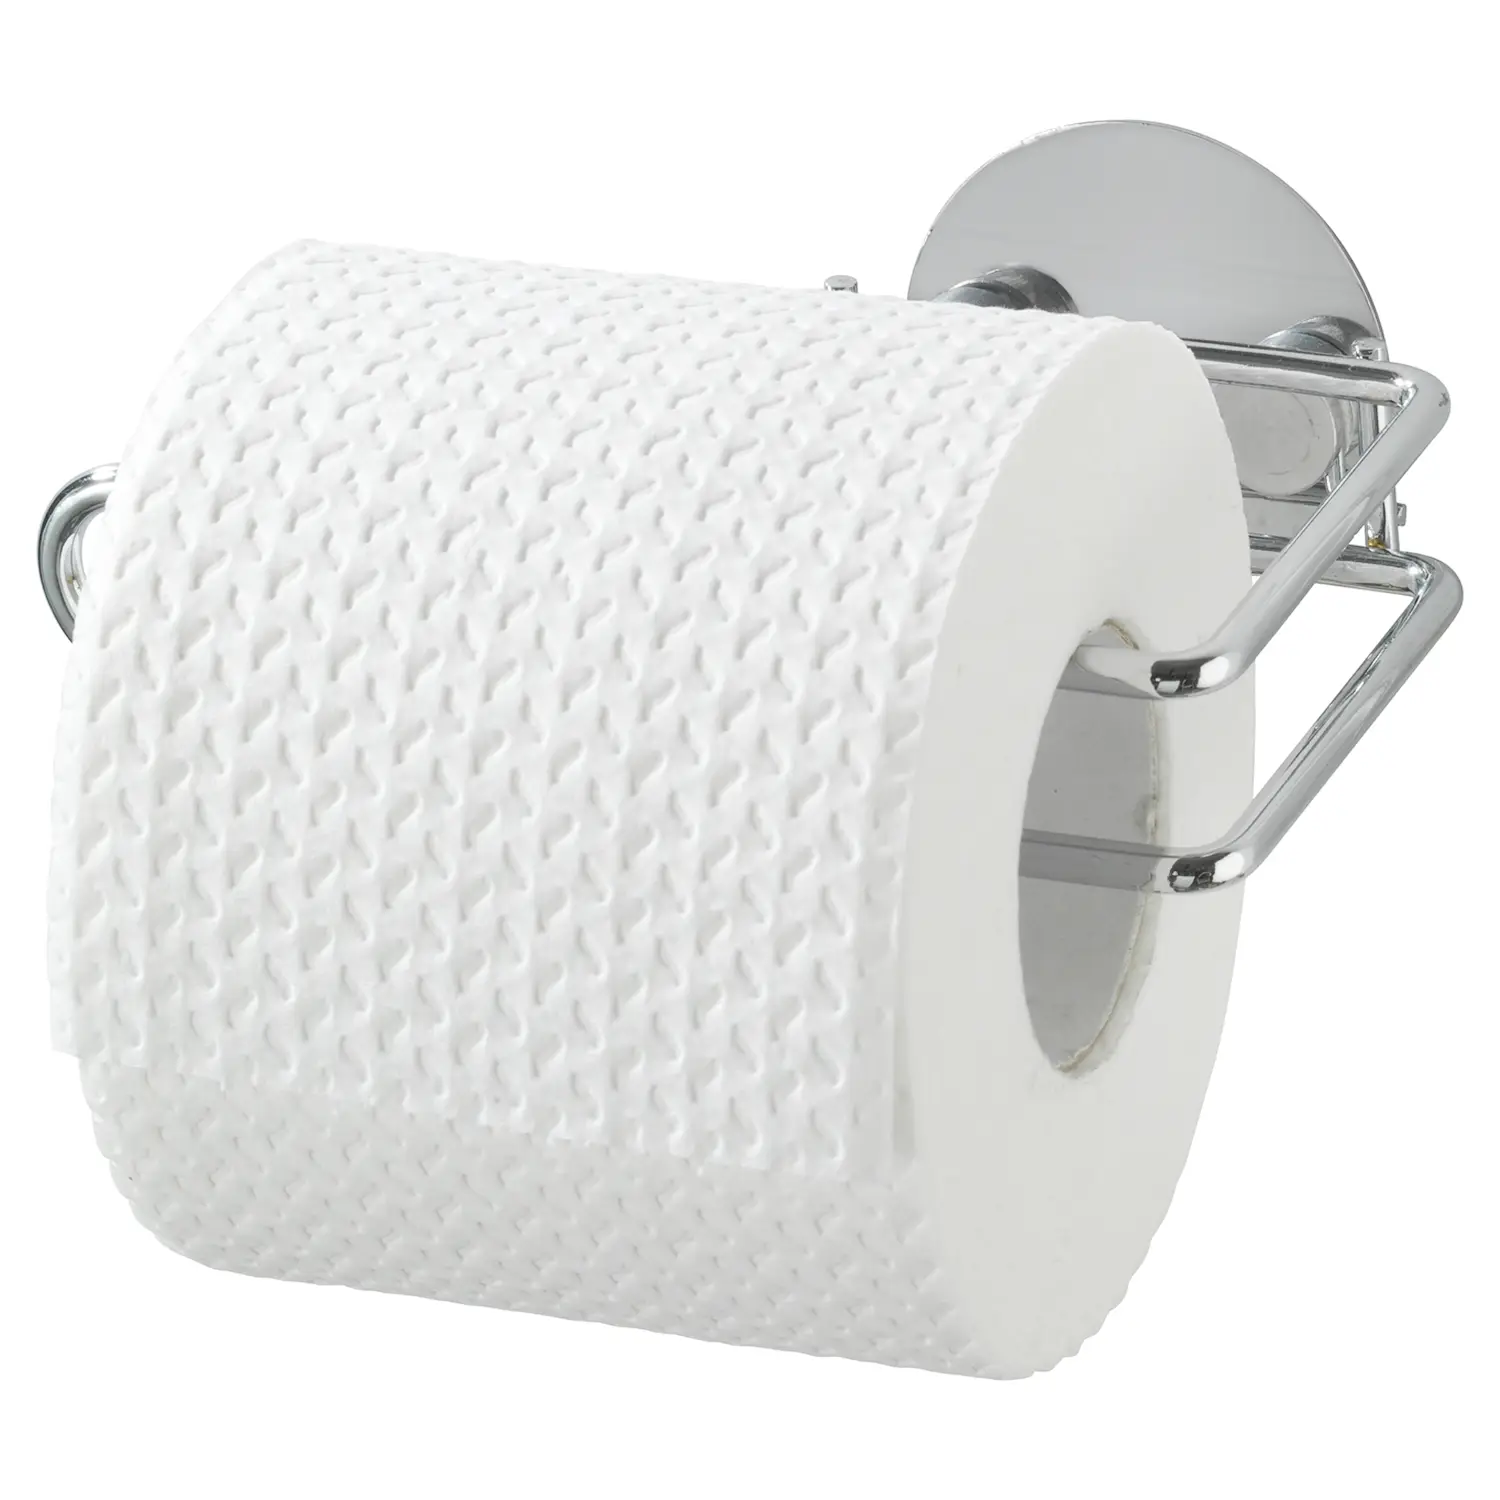 II Toilettenpapierrollenhalter Creerin